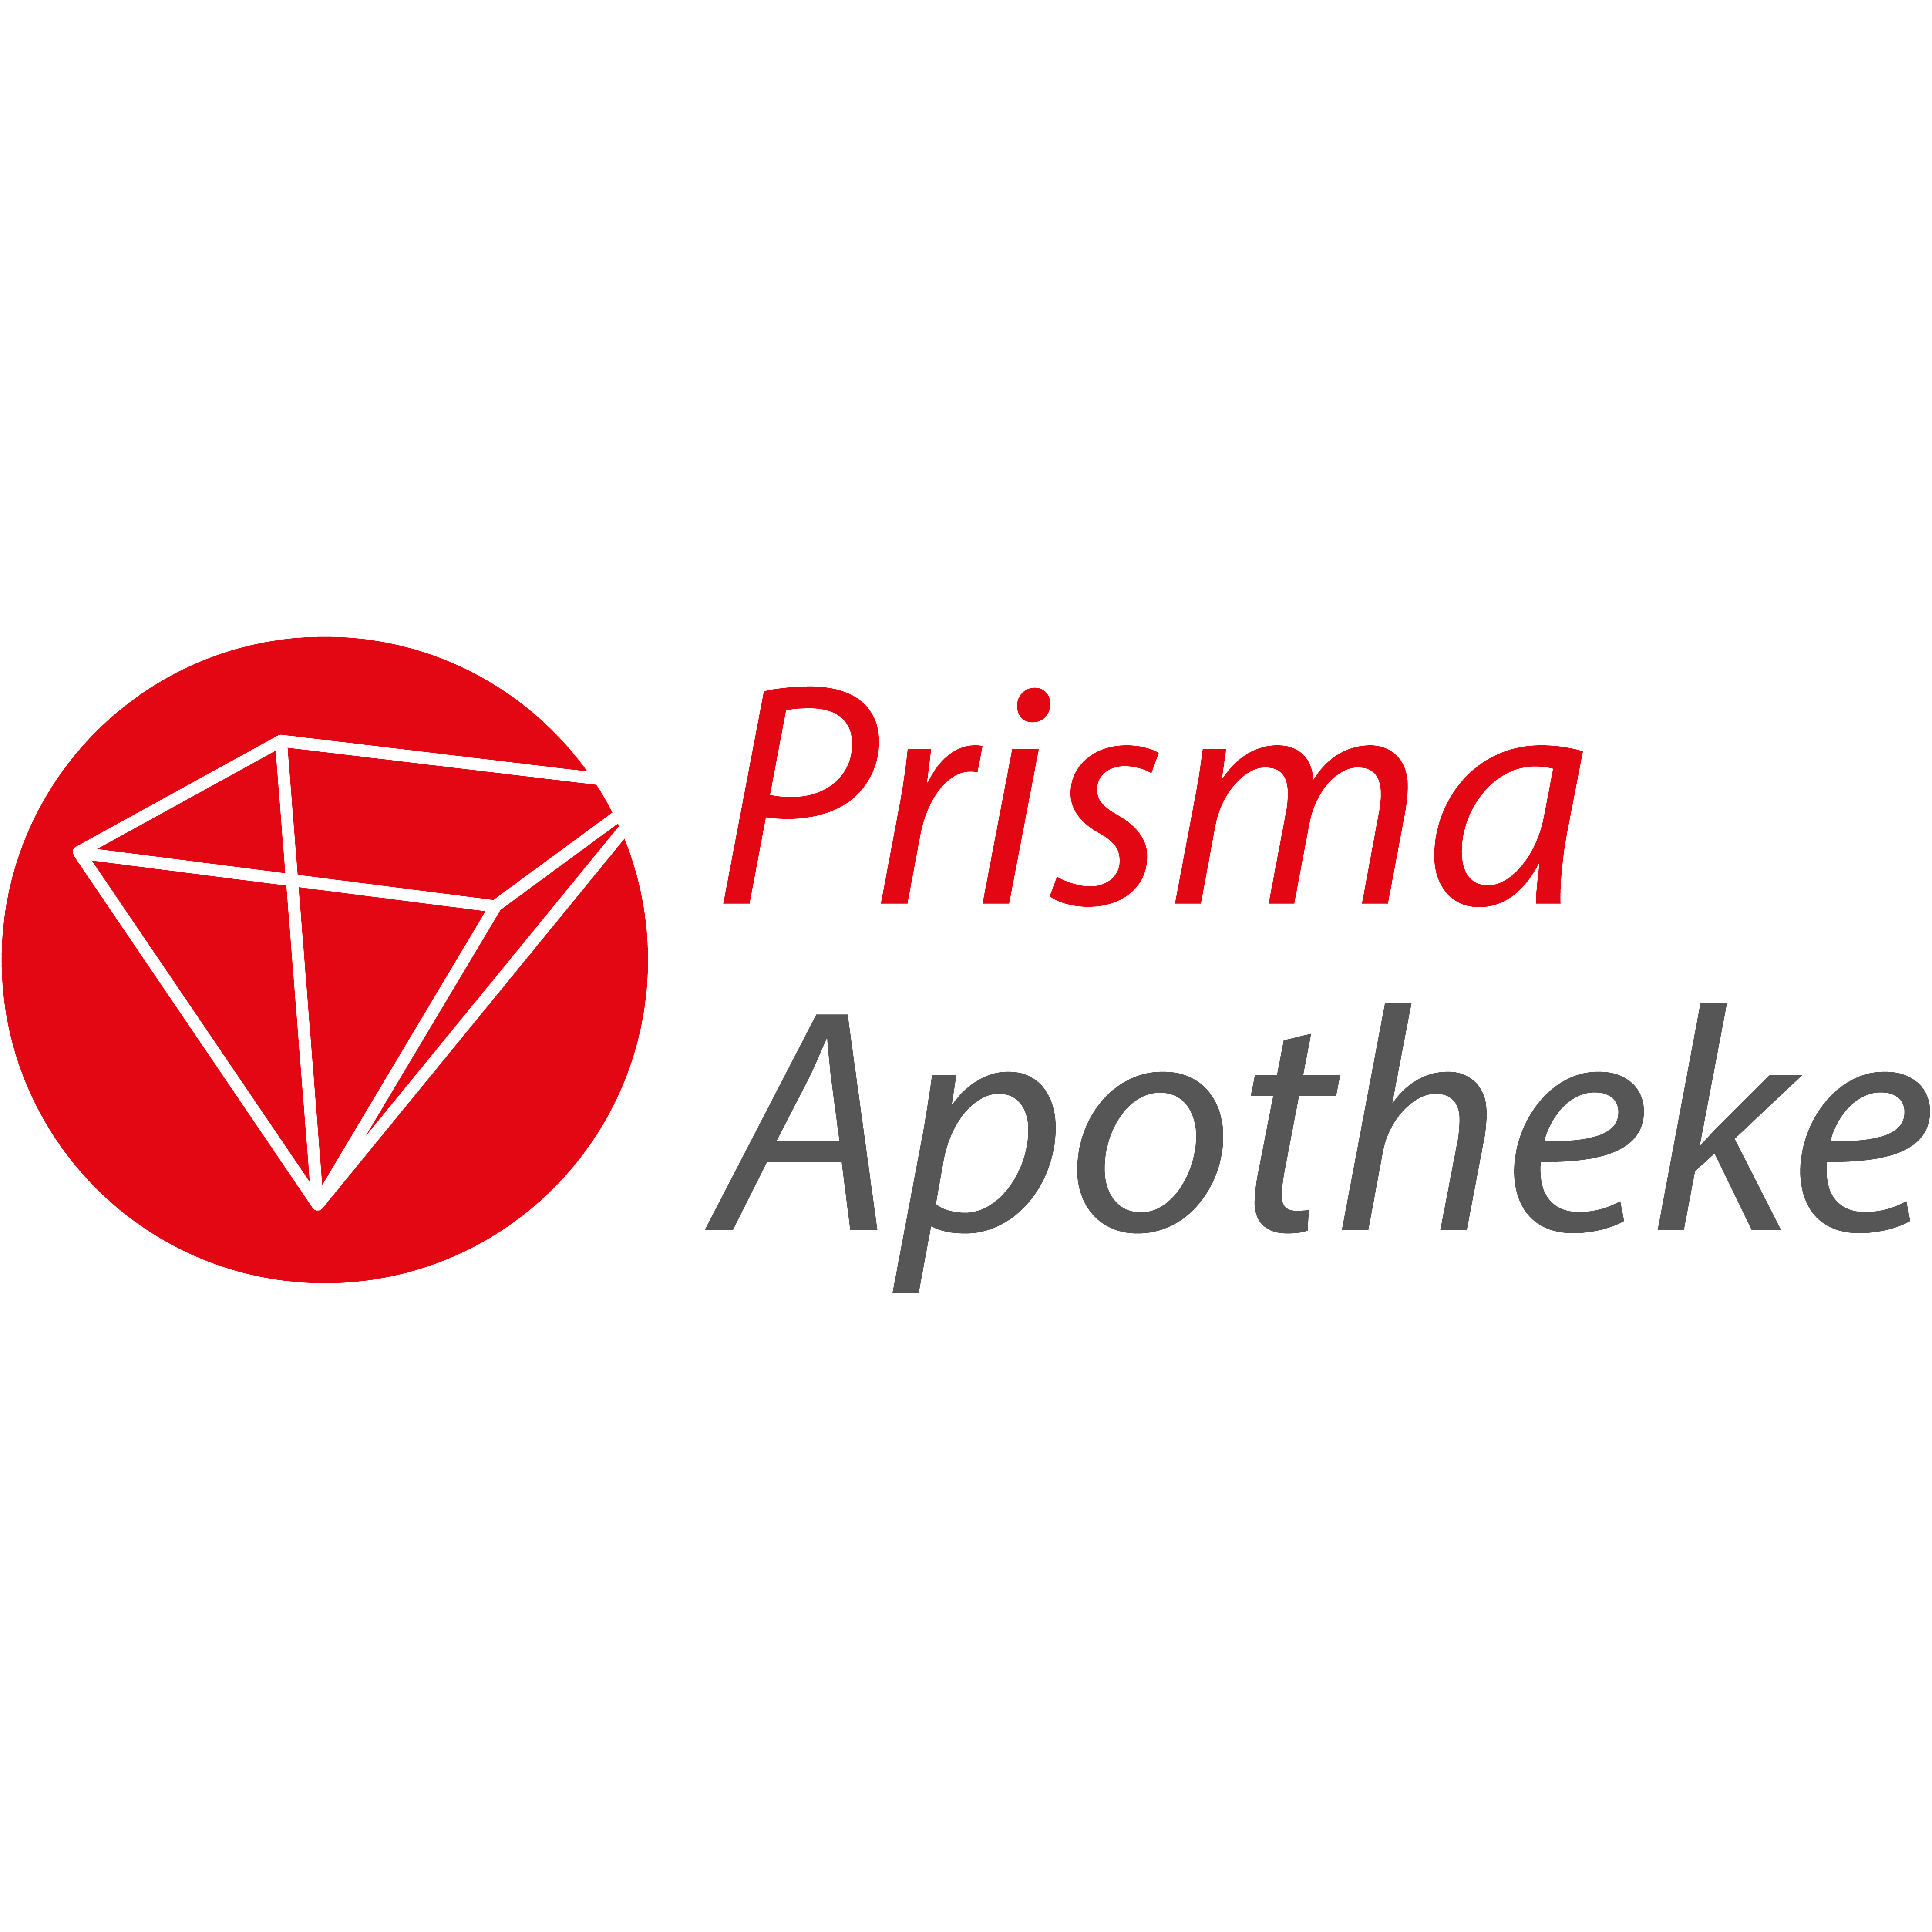 Prisma Apotheke in Bergkamen - Logo